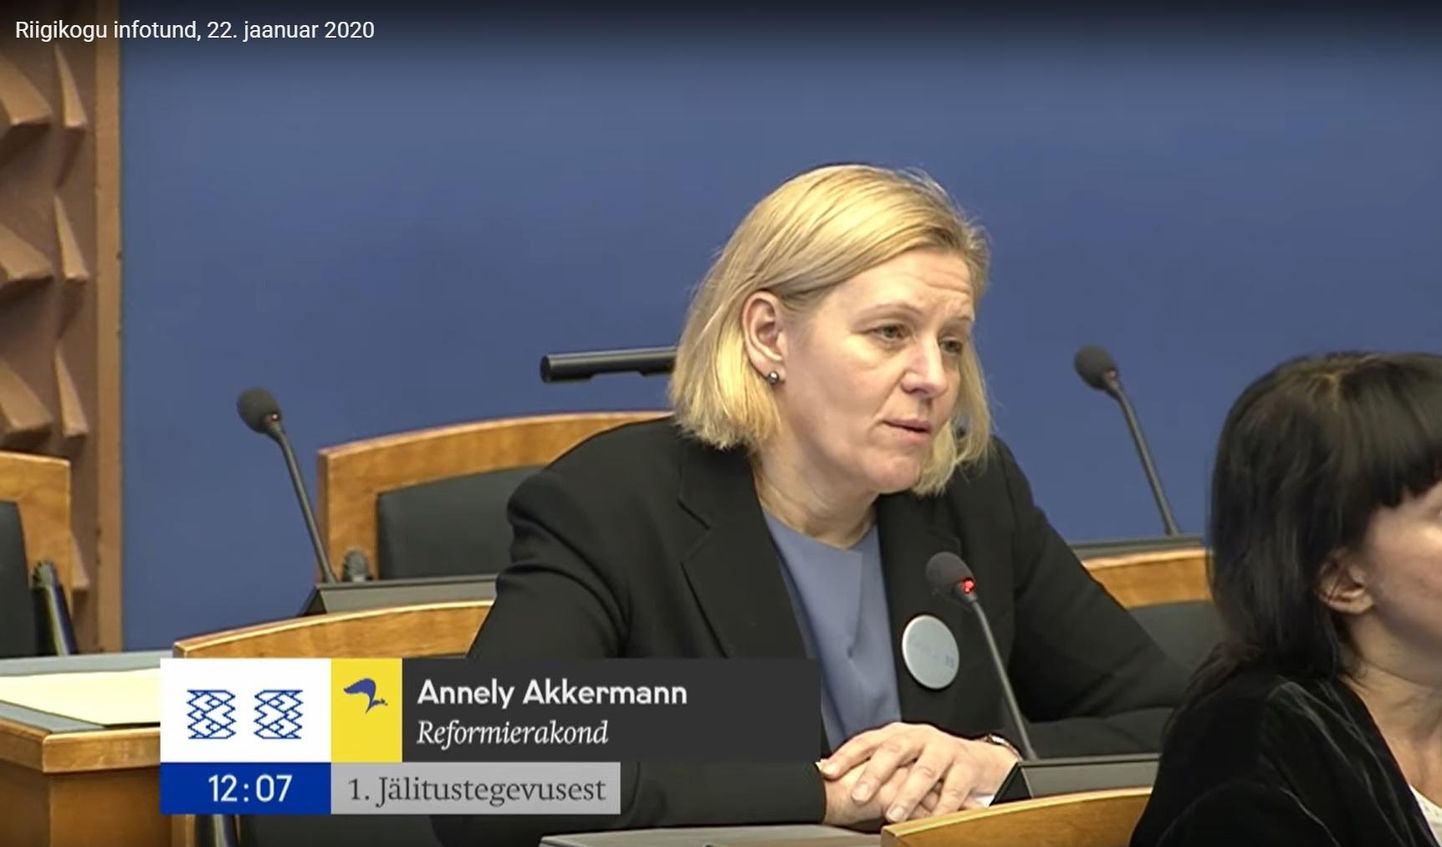 Riigikogu Reformierakonna fraktsiooni liige Annely Akkermann tõdes, et eksminister Mart Järvik on nüüd Maaelu Edendamise SA nõukogu liige, mis on samuti väga tähtis ametikoht.